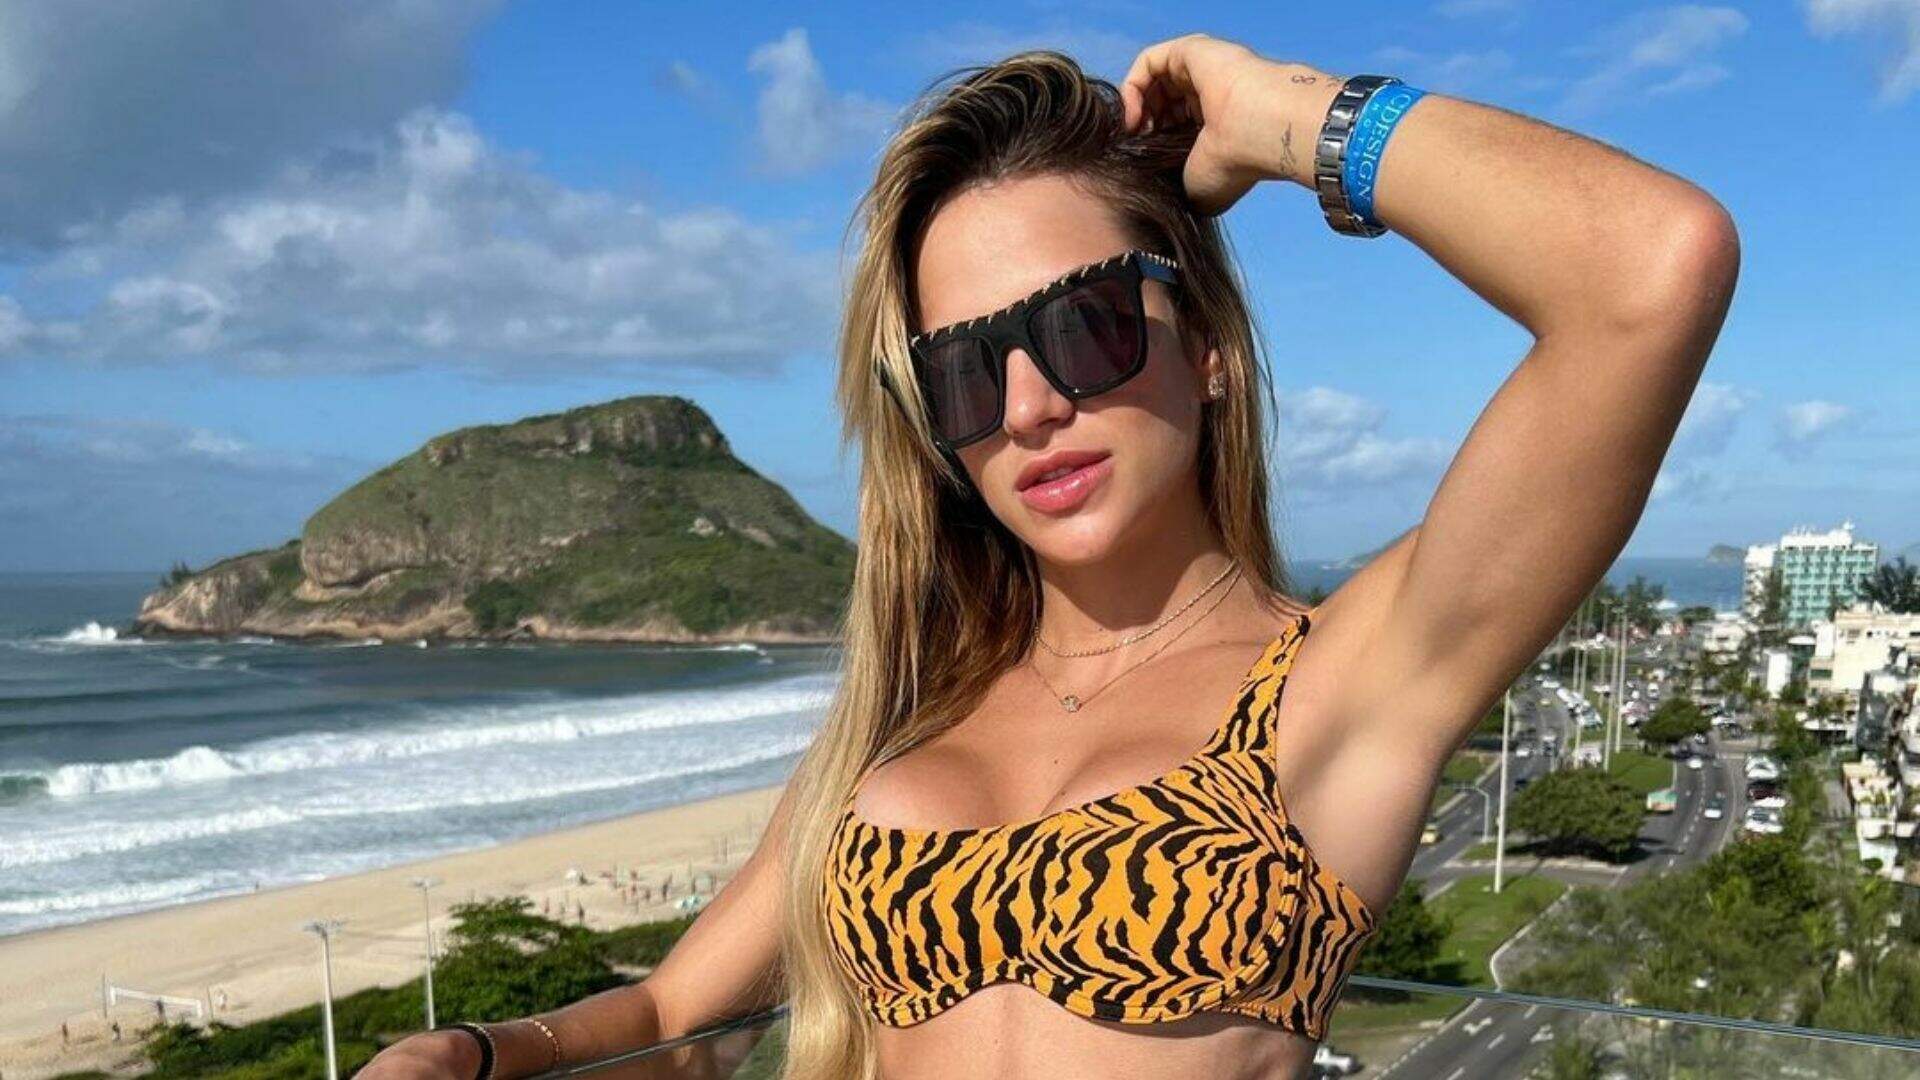 Com modelito de oncinha, Gabi Martins aproveita piscina no Rio de Janeiro: “Saudade” - Metropolitana FM